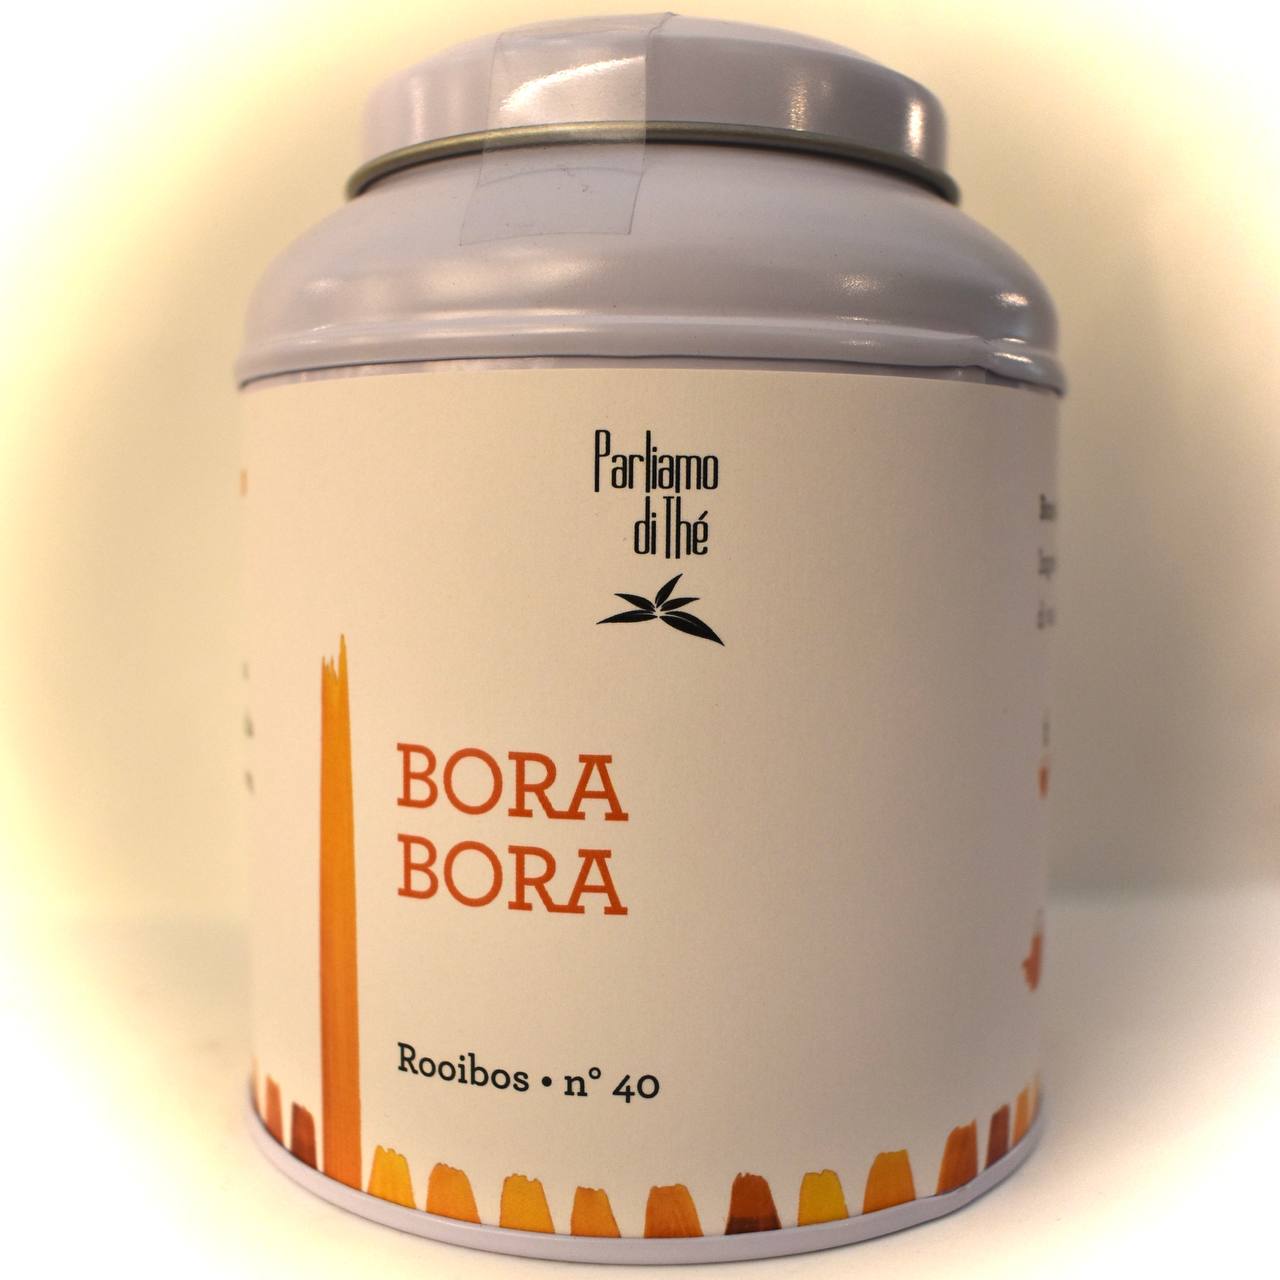 Bora Bora (Rooibos Vaniglia) Barattolo 100g